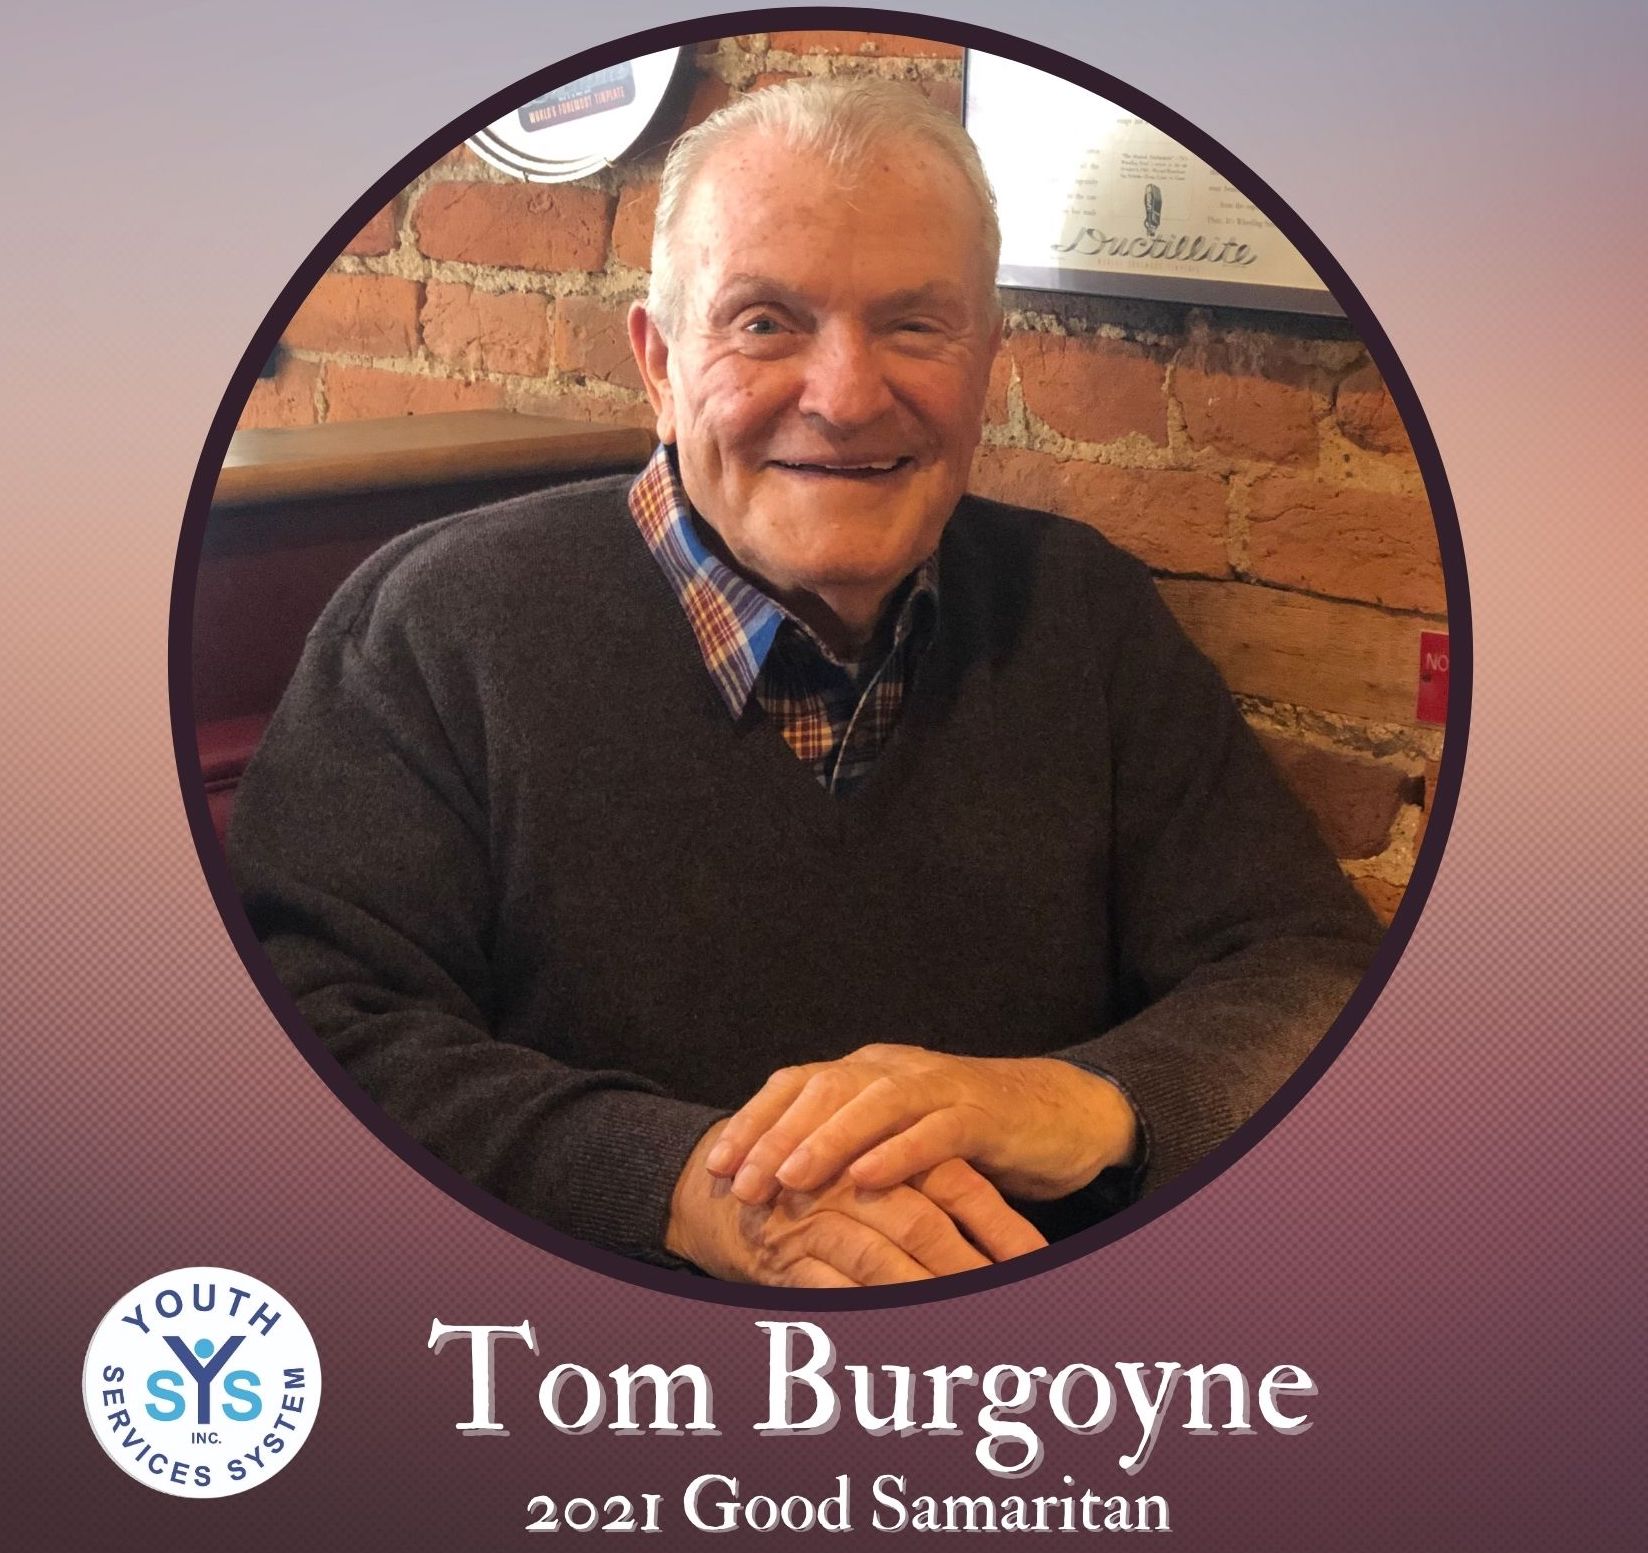 Thumbnail for 2021 Good Samaritan Tribute Video - Tom Burgoyne